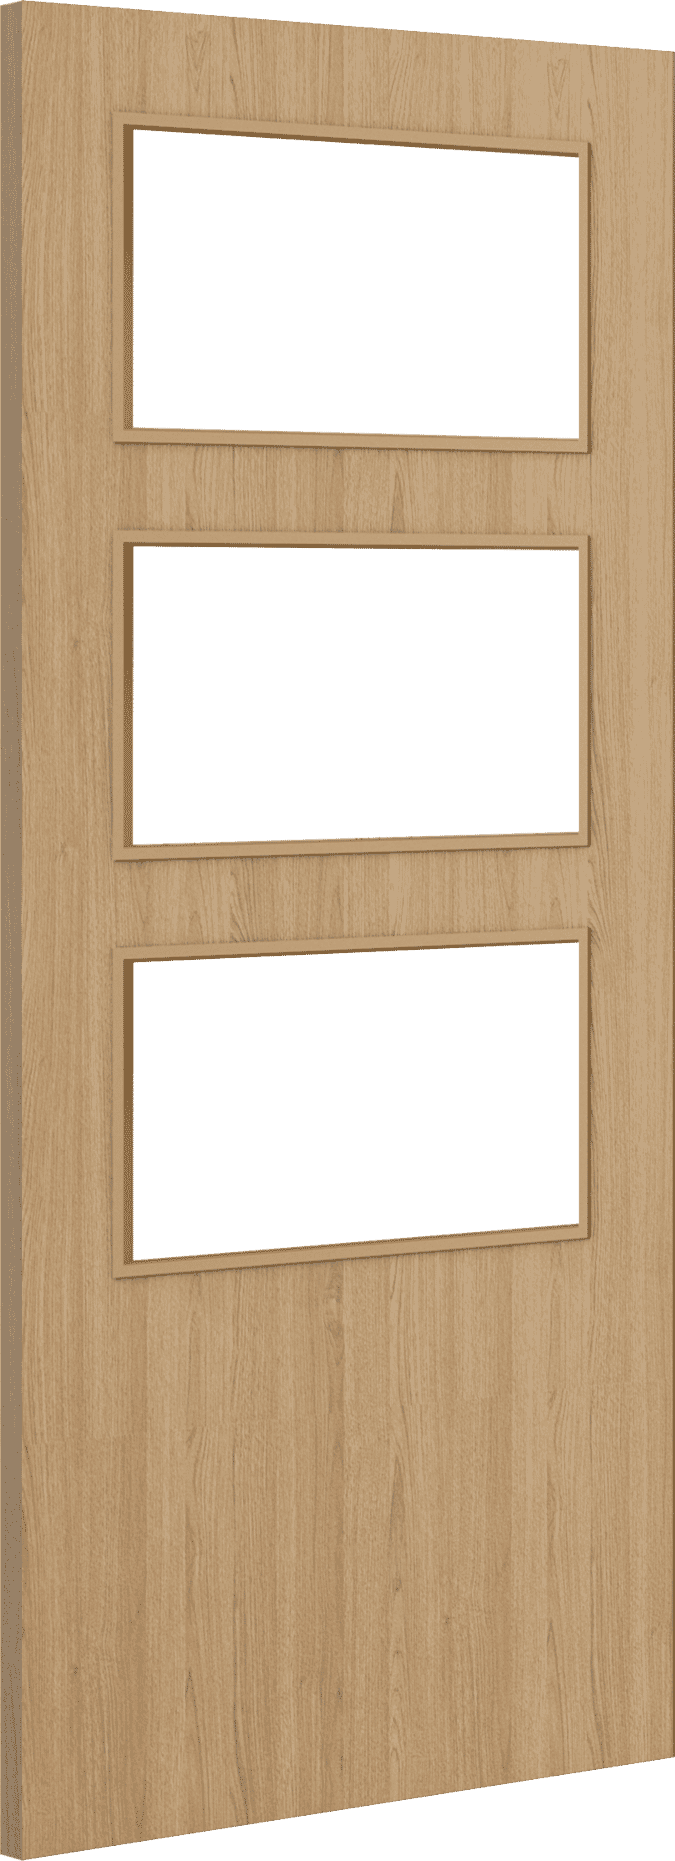 2040mm x 626mm x 44mm Architectural Oak 03 Clear Glazed - Prefinished FD30 Fire Door Blank